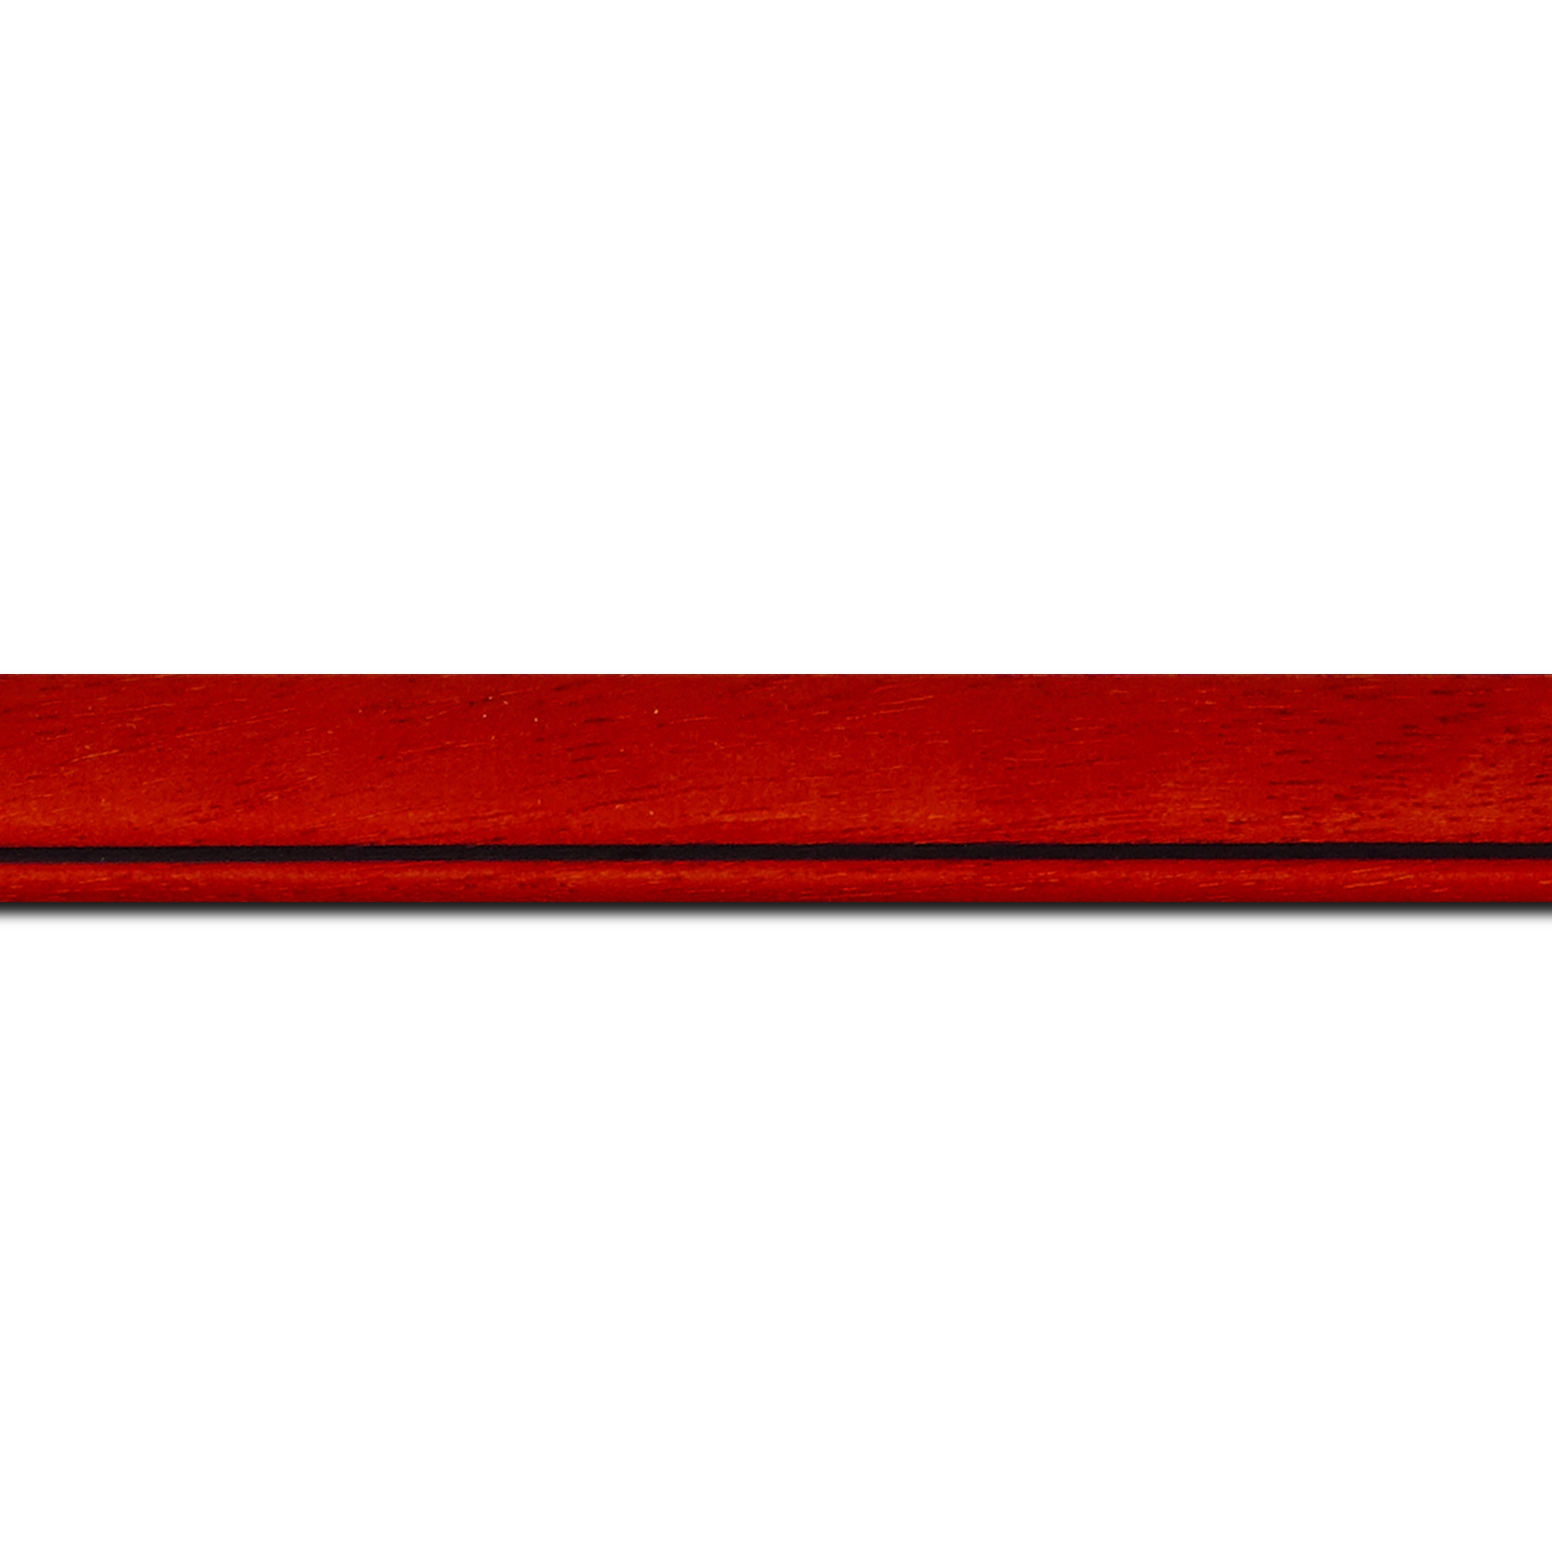 Baguette longueur 1.40m bois profil bombé largeur 2.4cm couleur rouge cerise satiné filet noir